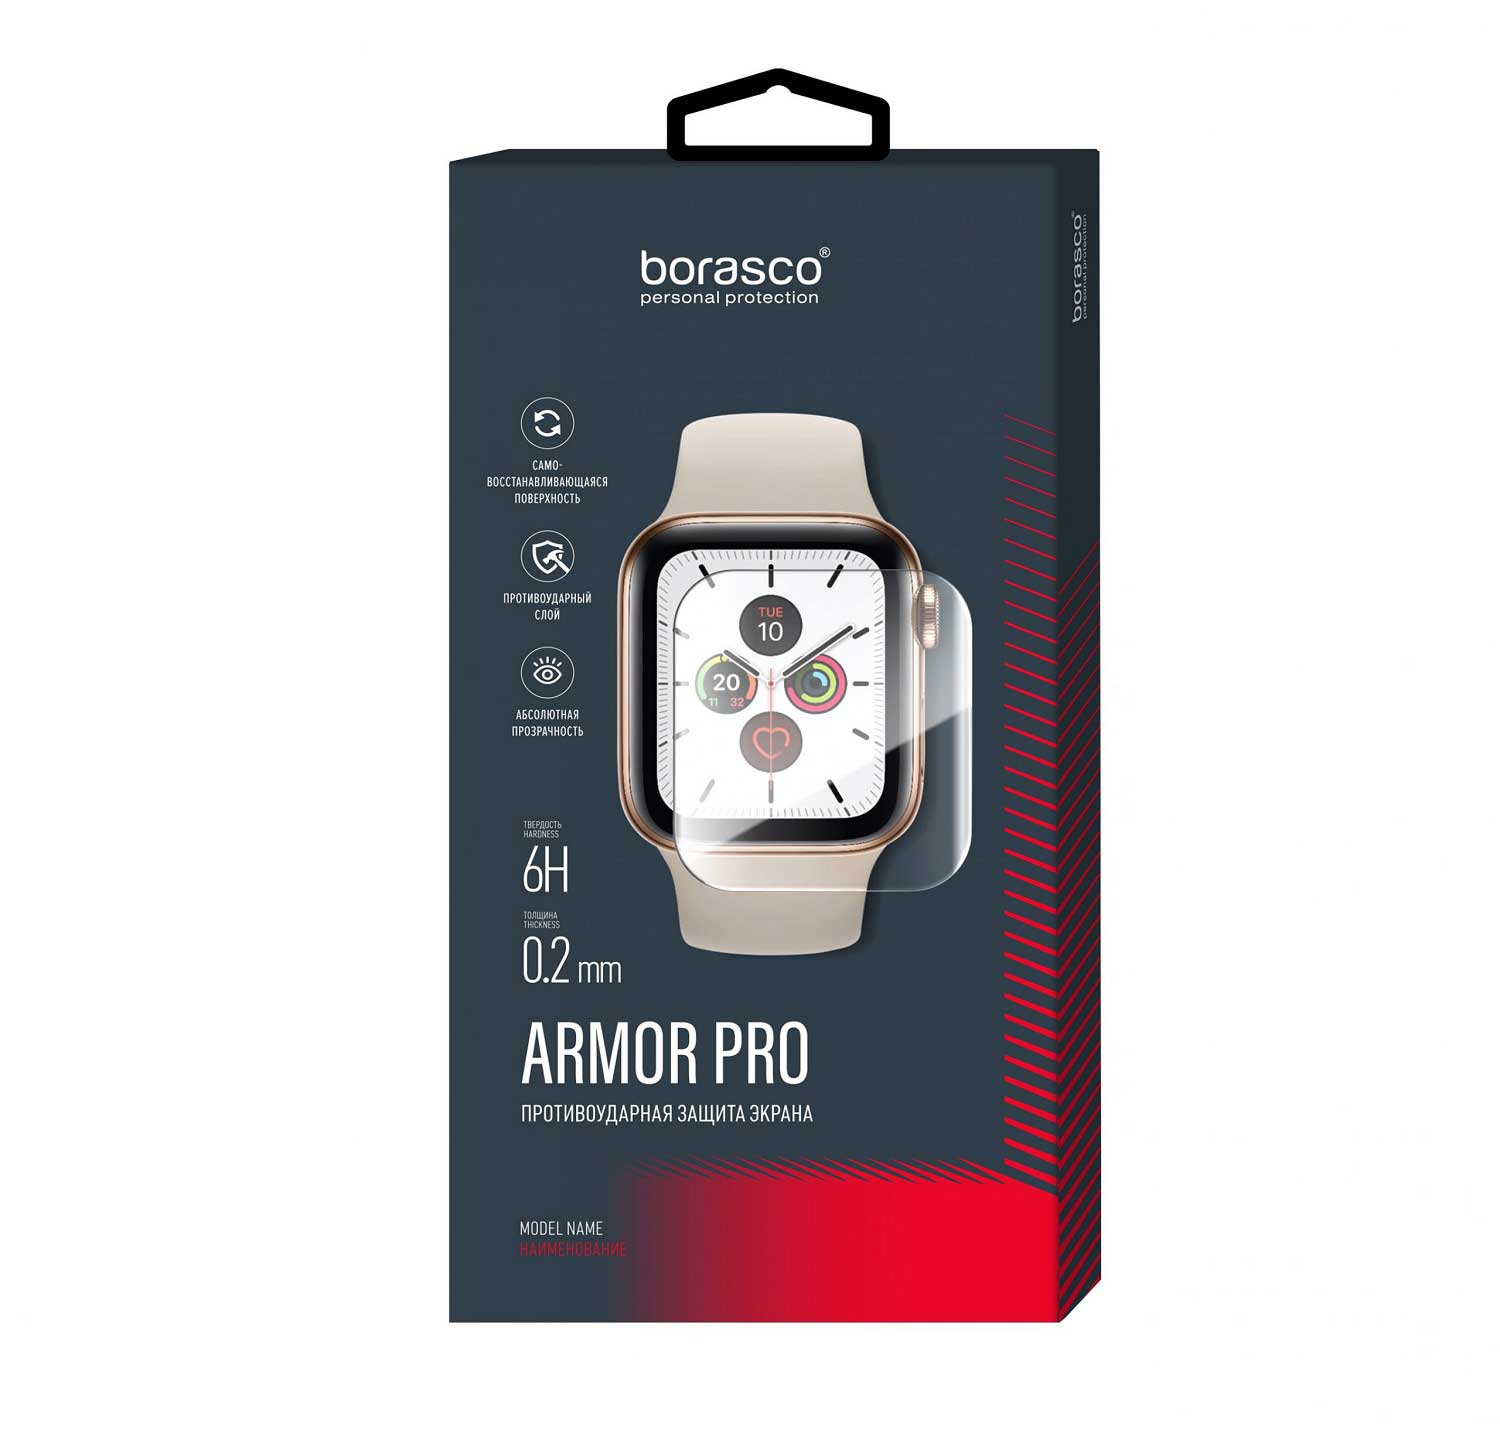 Защита экрана BoraSCO Armor Pro для Xiaomi Mi Band 3 матовый защита экрана borasco armor pro для honor band 3